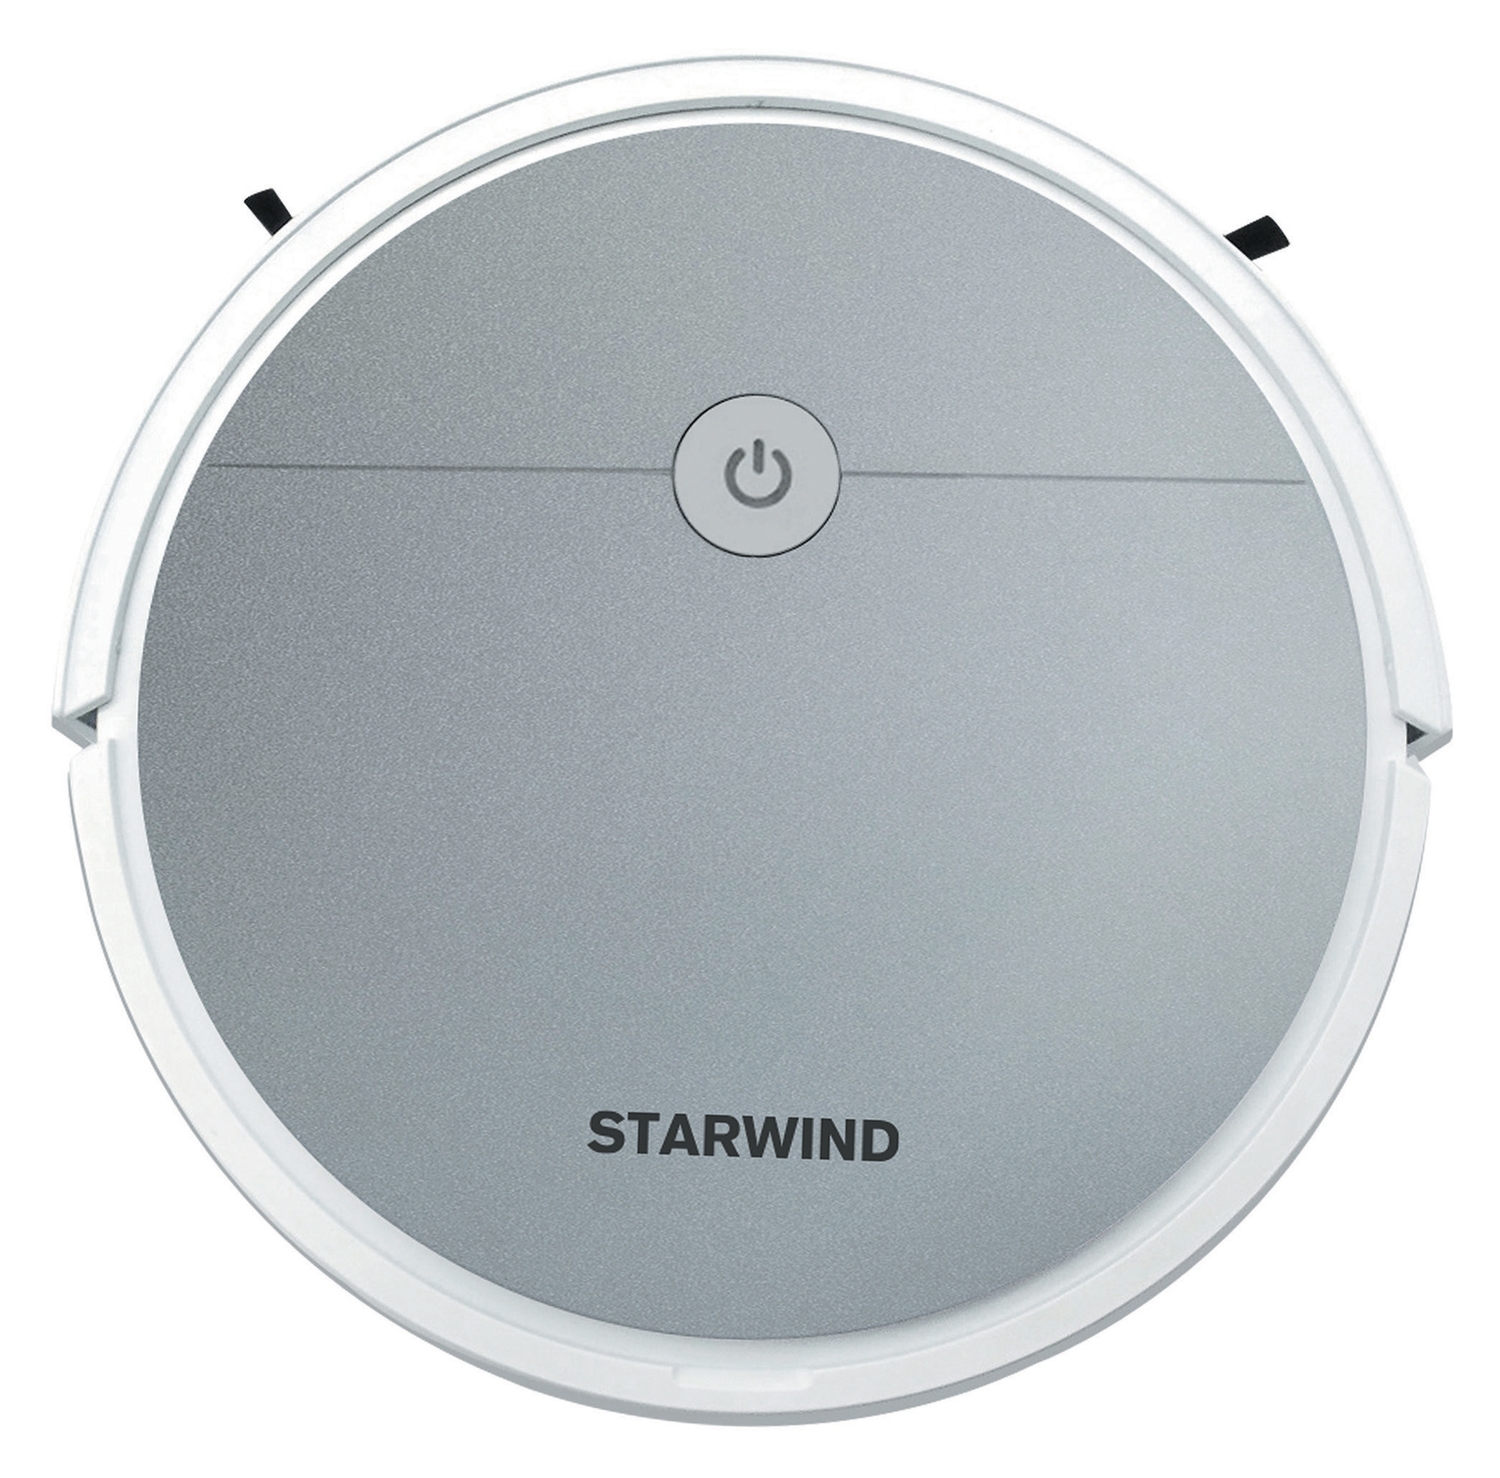 Робот-пылесос Starwind SRV4570 15Вт, сухая и влажная уборка, серебристый/белый робот пылесос starwind srv4570 15вт серебристый белый